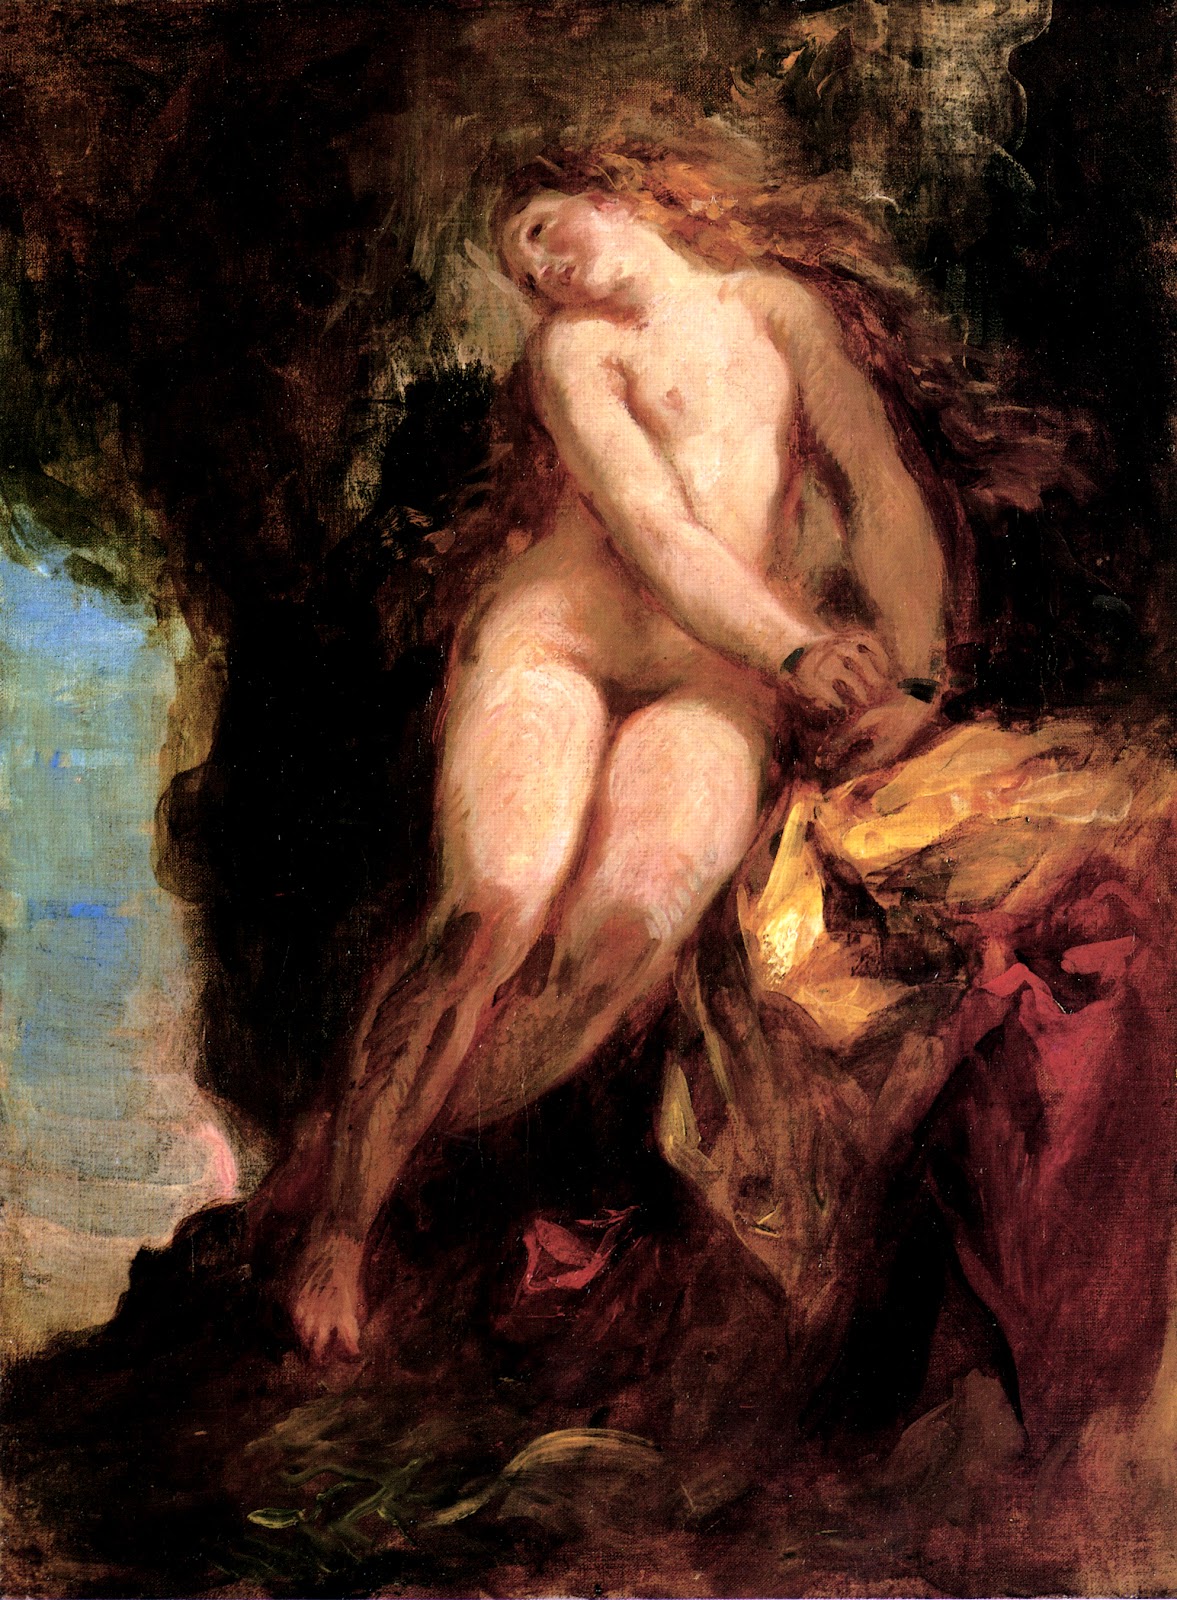 Eugene+Delacroix-1798-1863 (83).jpg